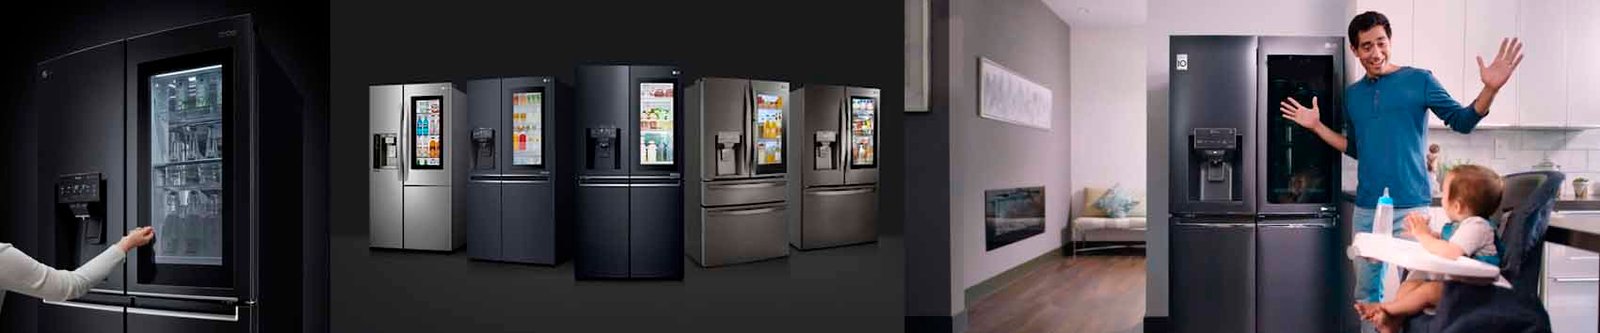 Assistencia técnica LG refrigeradores